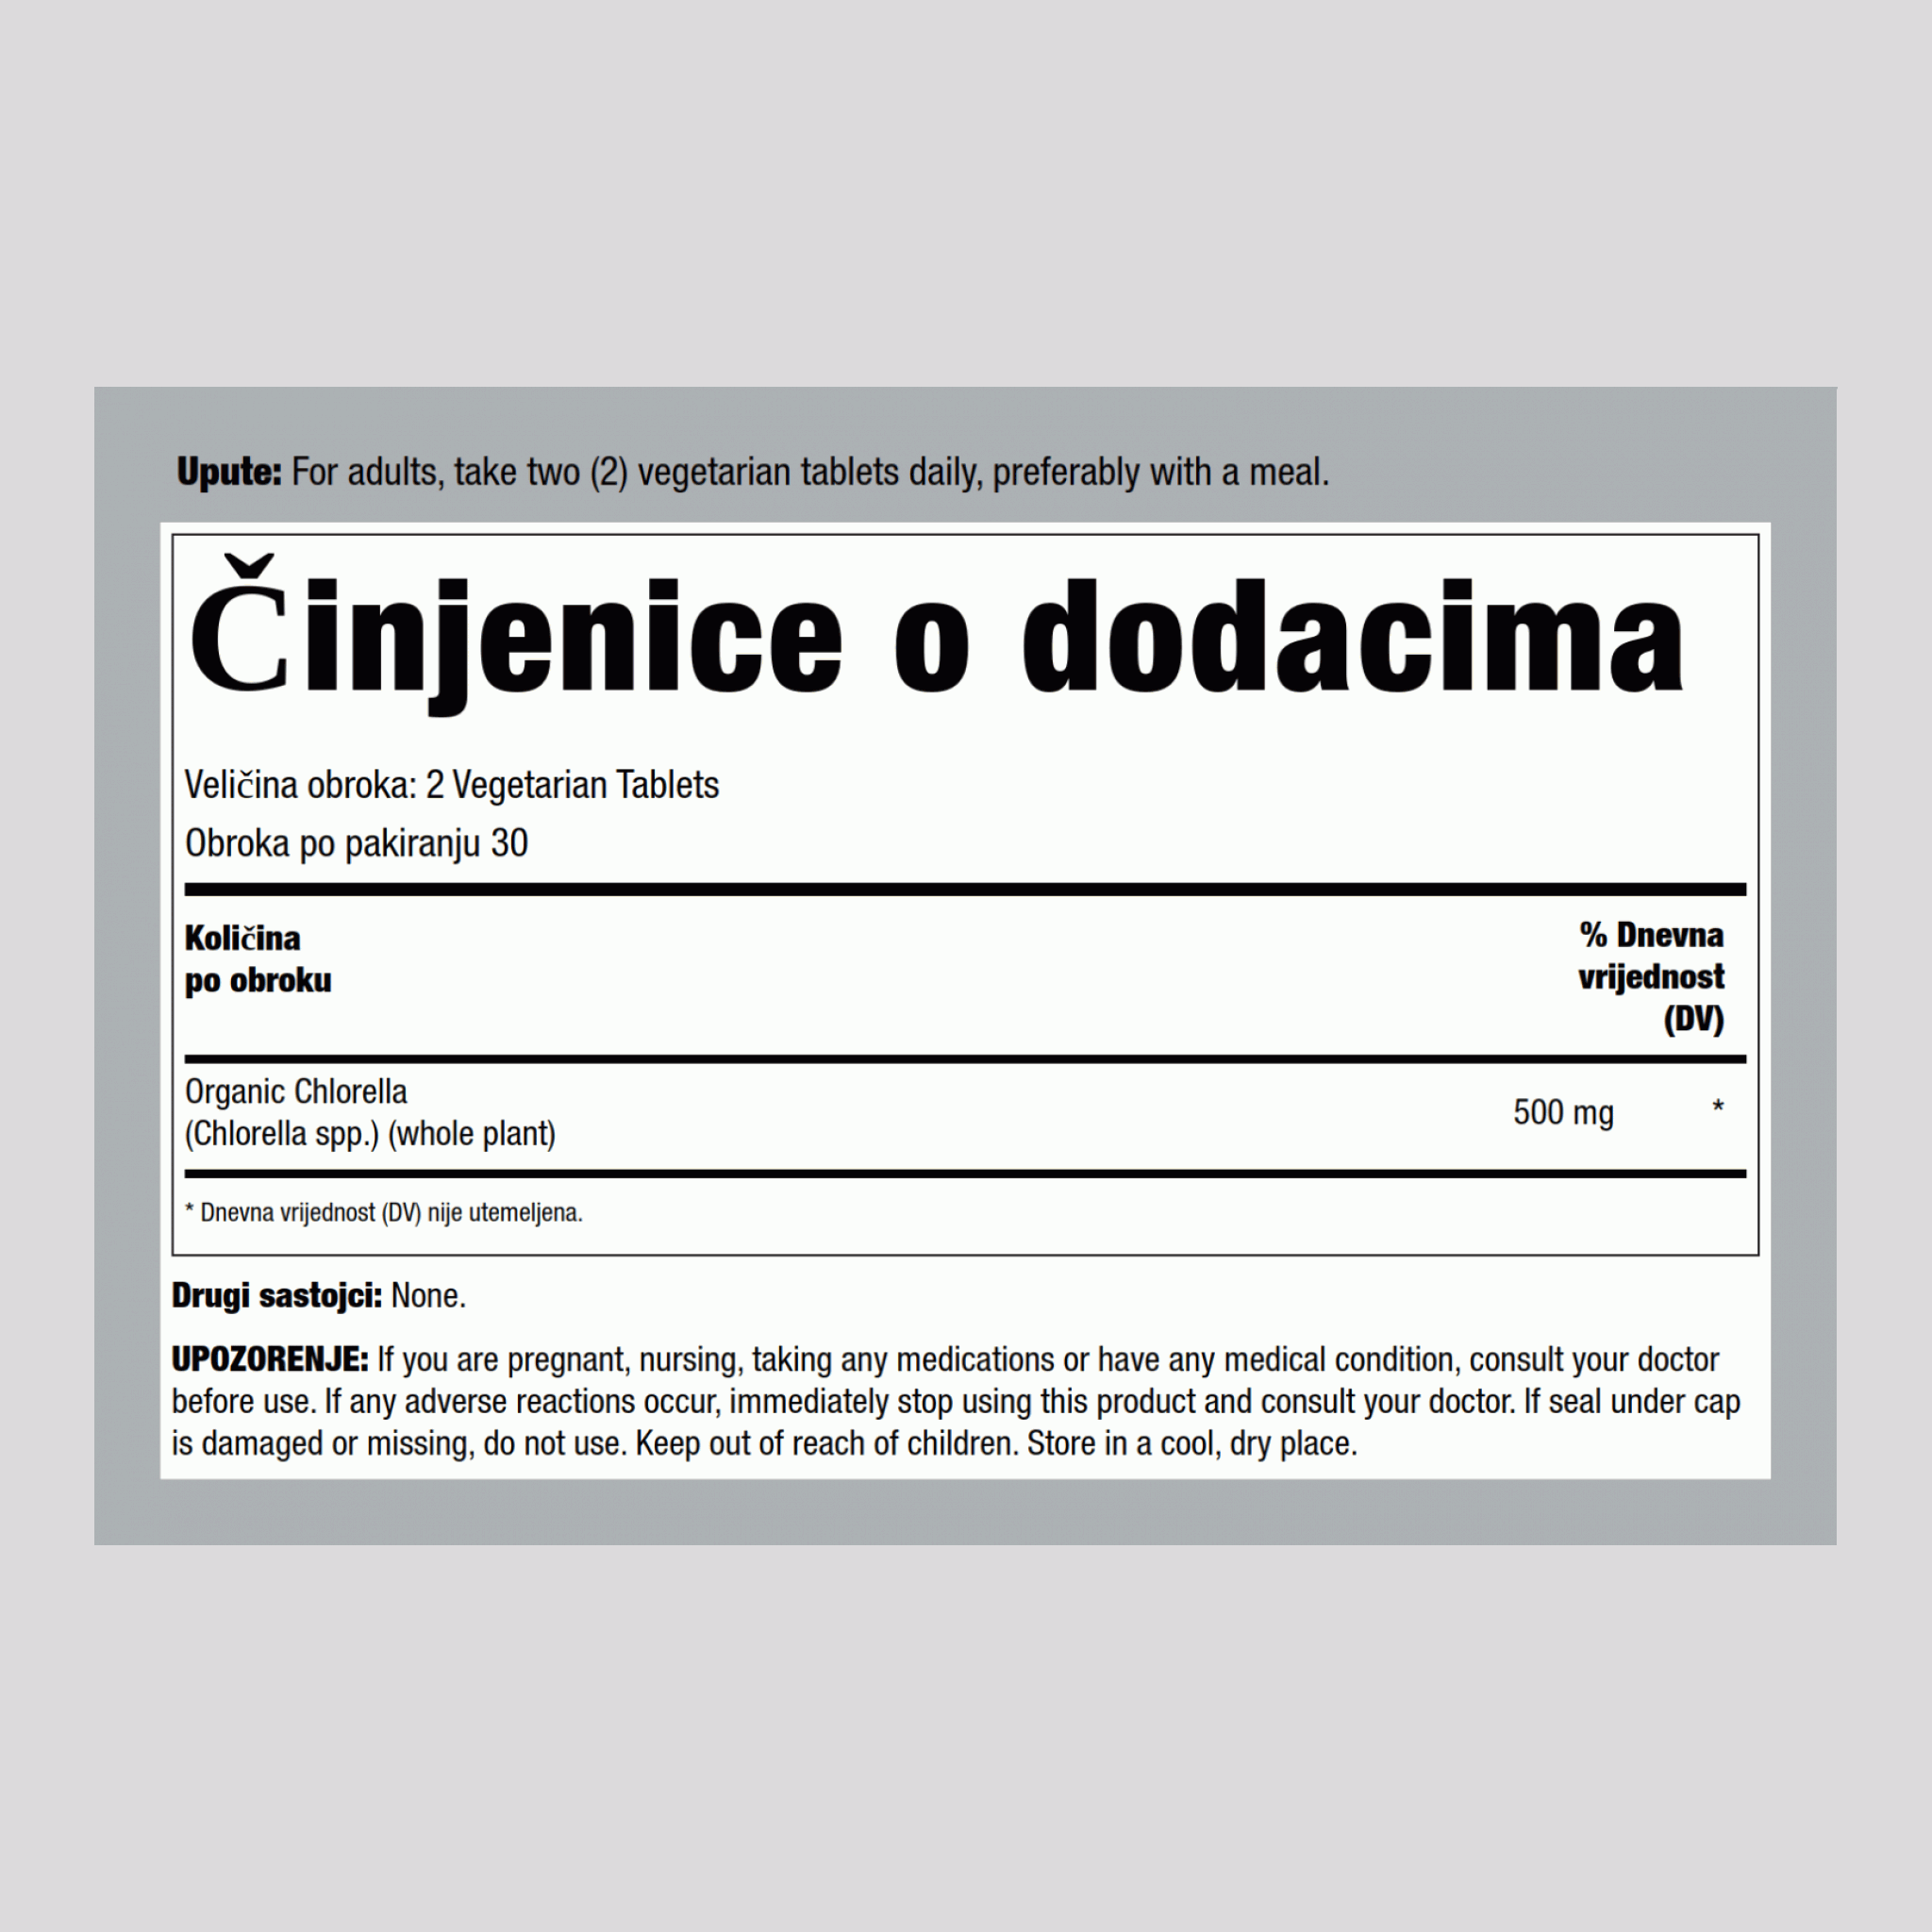 Chlorella (ekologisk),  500 mg (par portion) 60 Comprimés végétaux 2 Bouteilles